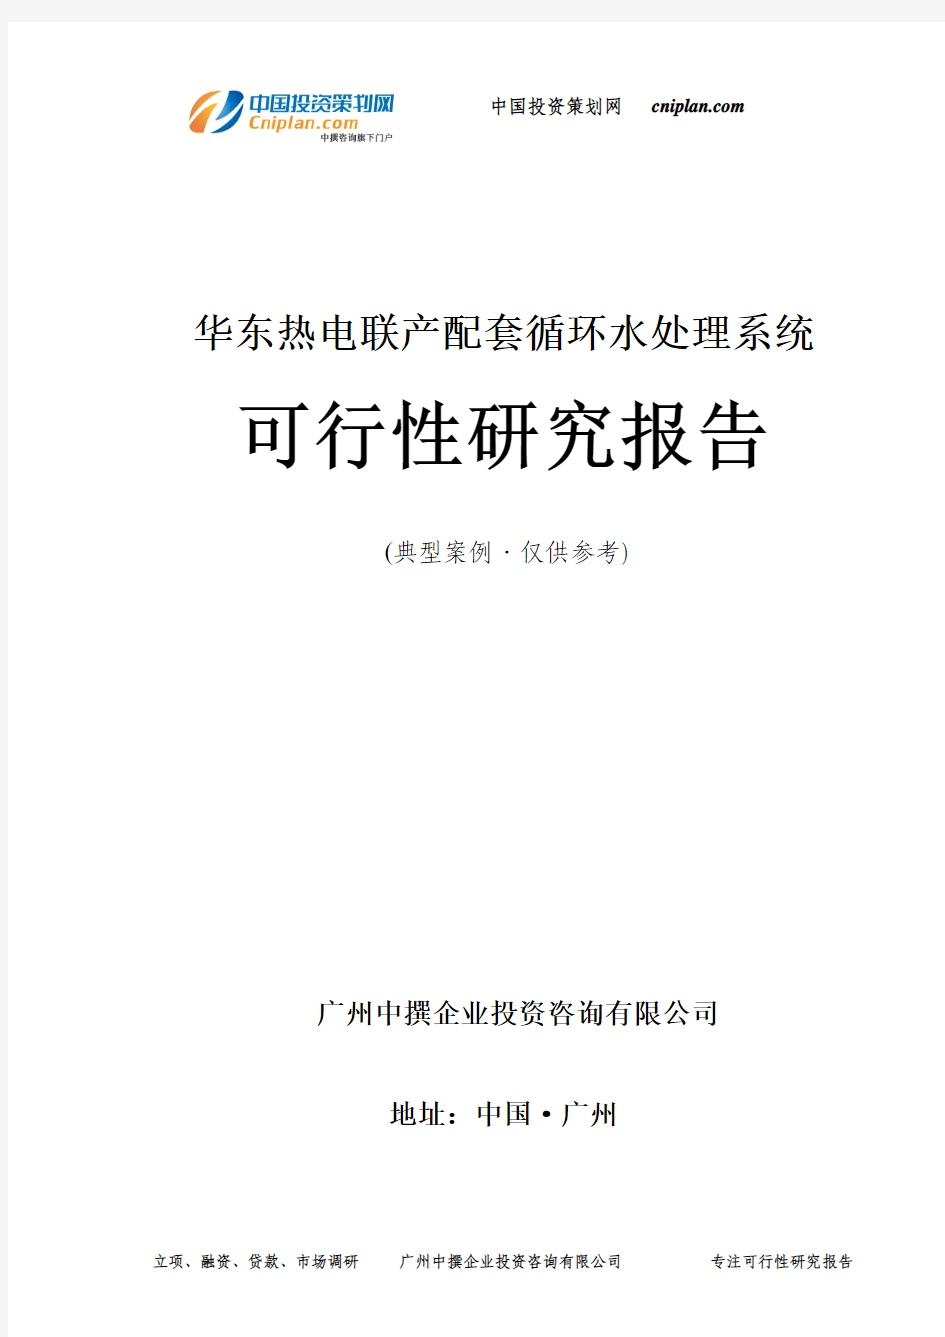 热电联产配套循环水处理系统可行性研究报告-广州中撰咨询